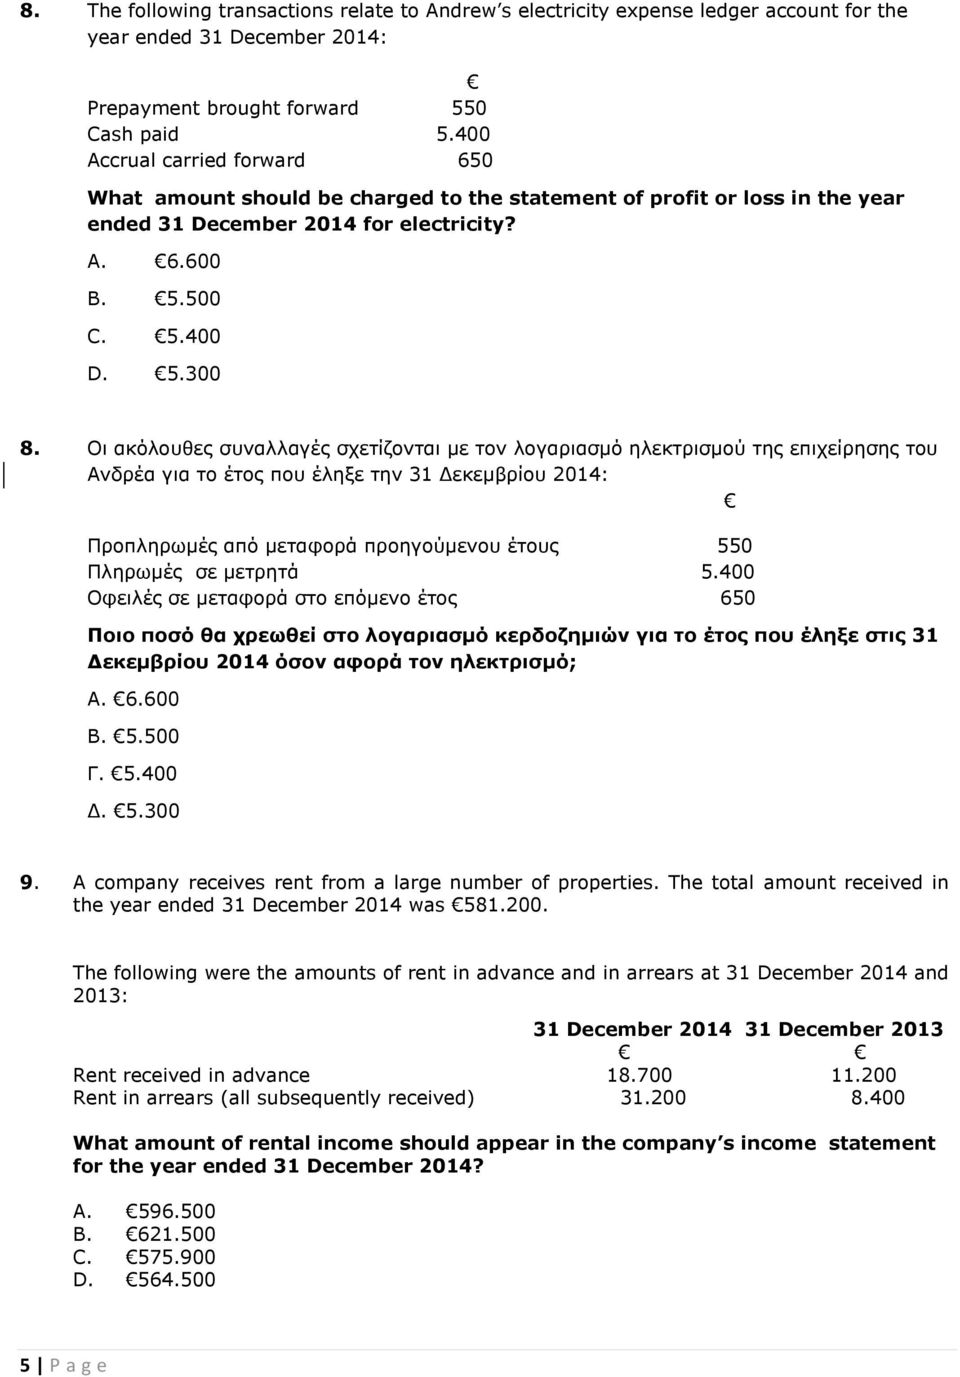 Οι ακόλουθες συναλλαγές σχετίζονται με τον λογαριασμό ηλεκτρισμού της επιχείρησης του Ανδρέα για το έτος που έληξε την 31 Δεκεμβρίου 2014: Προπληρωμές από μεταφορά προηγούμενου έτους 550 Πληρωμές σε